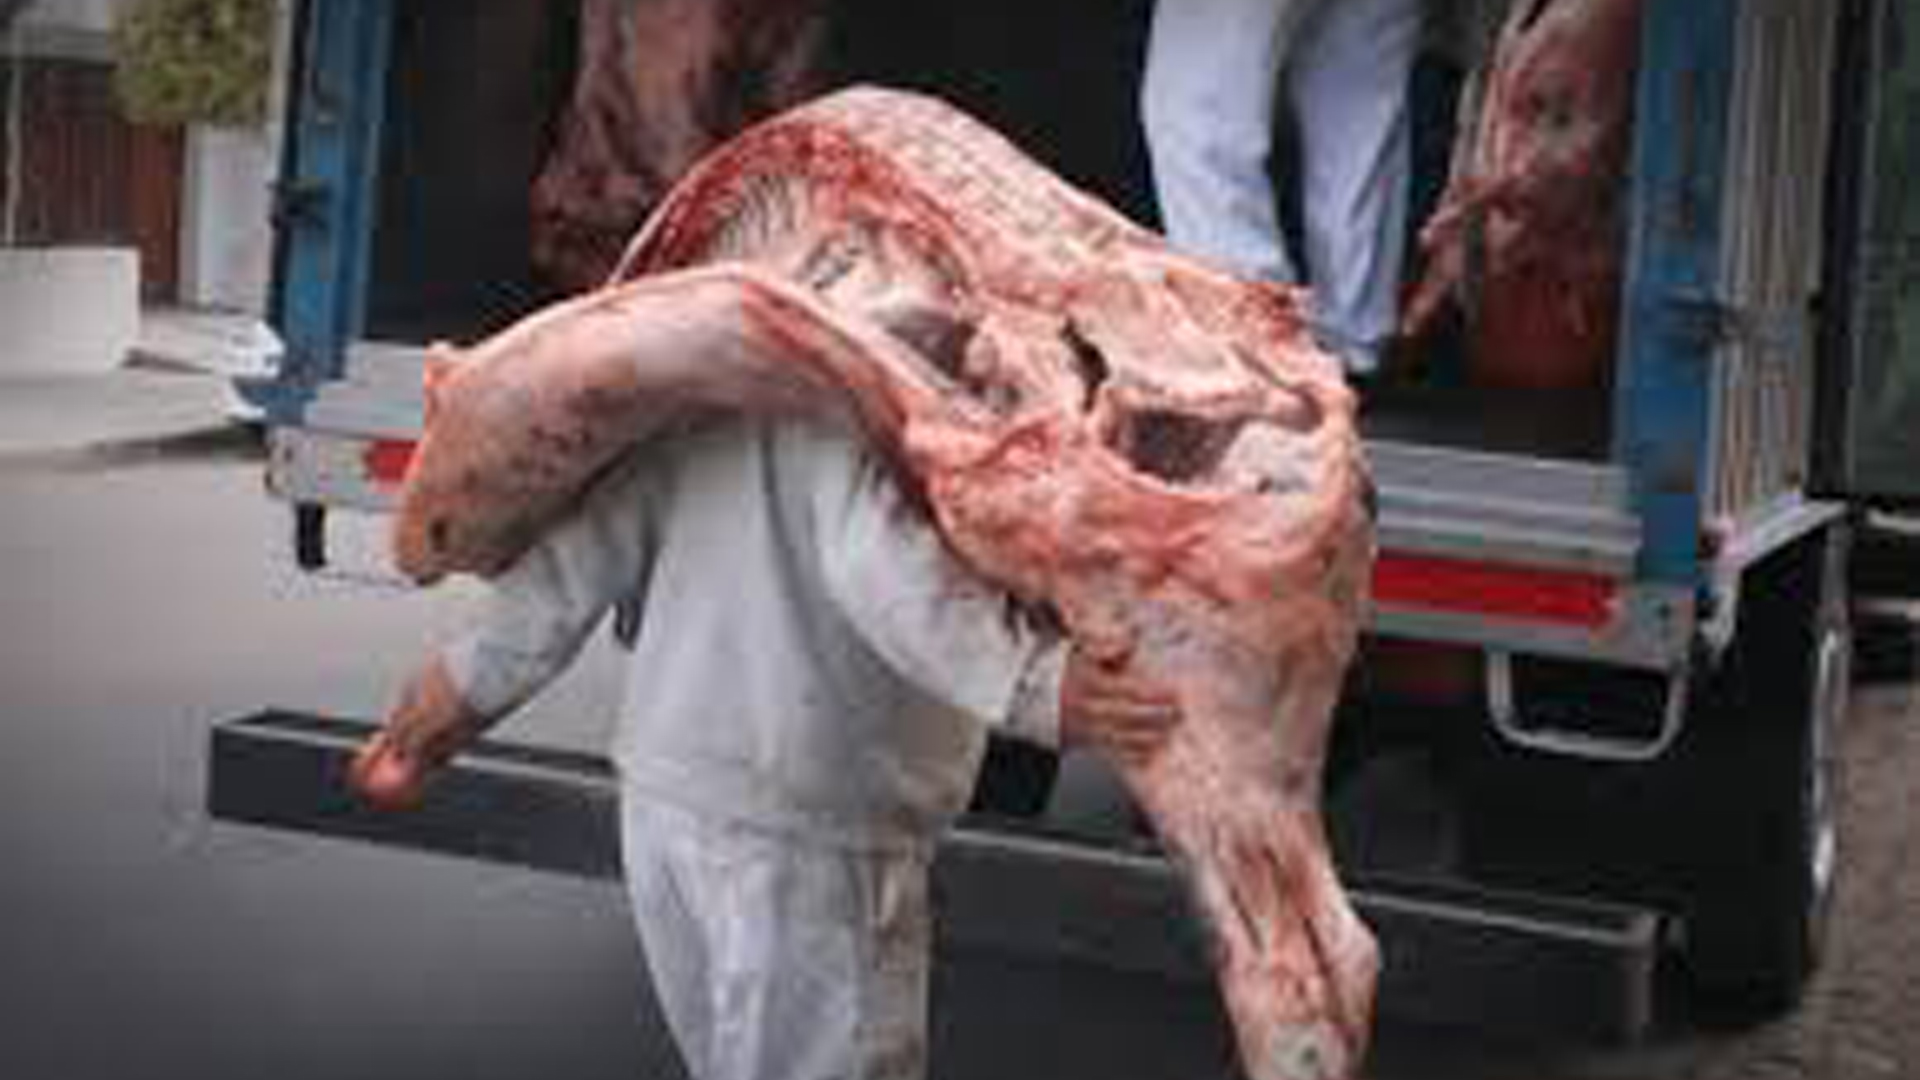 Carne contaminada: los exportadores reclamaron mayor seguridad e higiene en la elaboración tras la intoxicación que provocó dos muertes